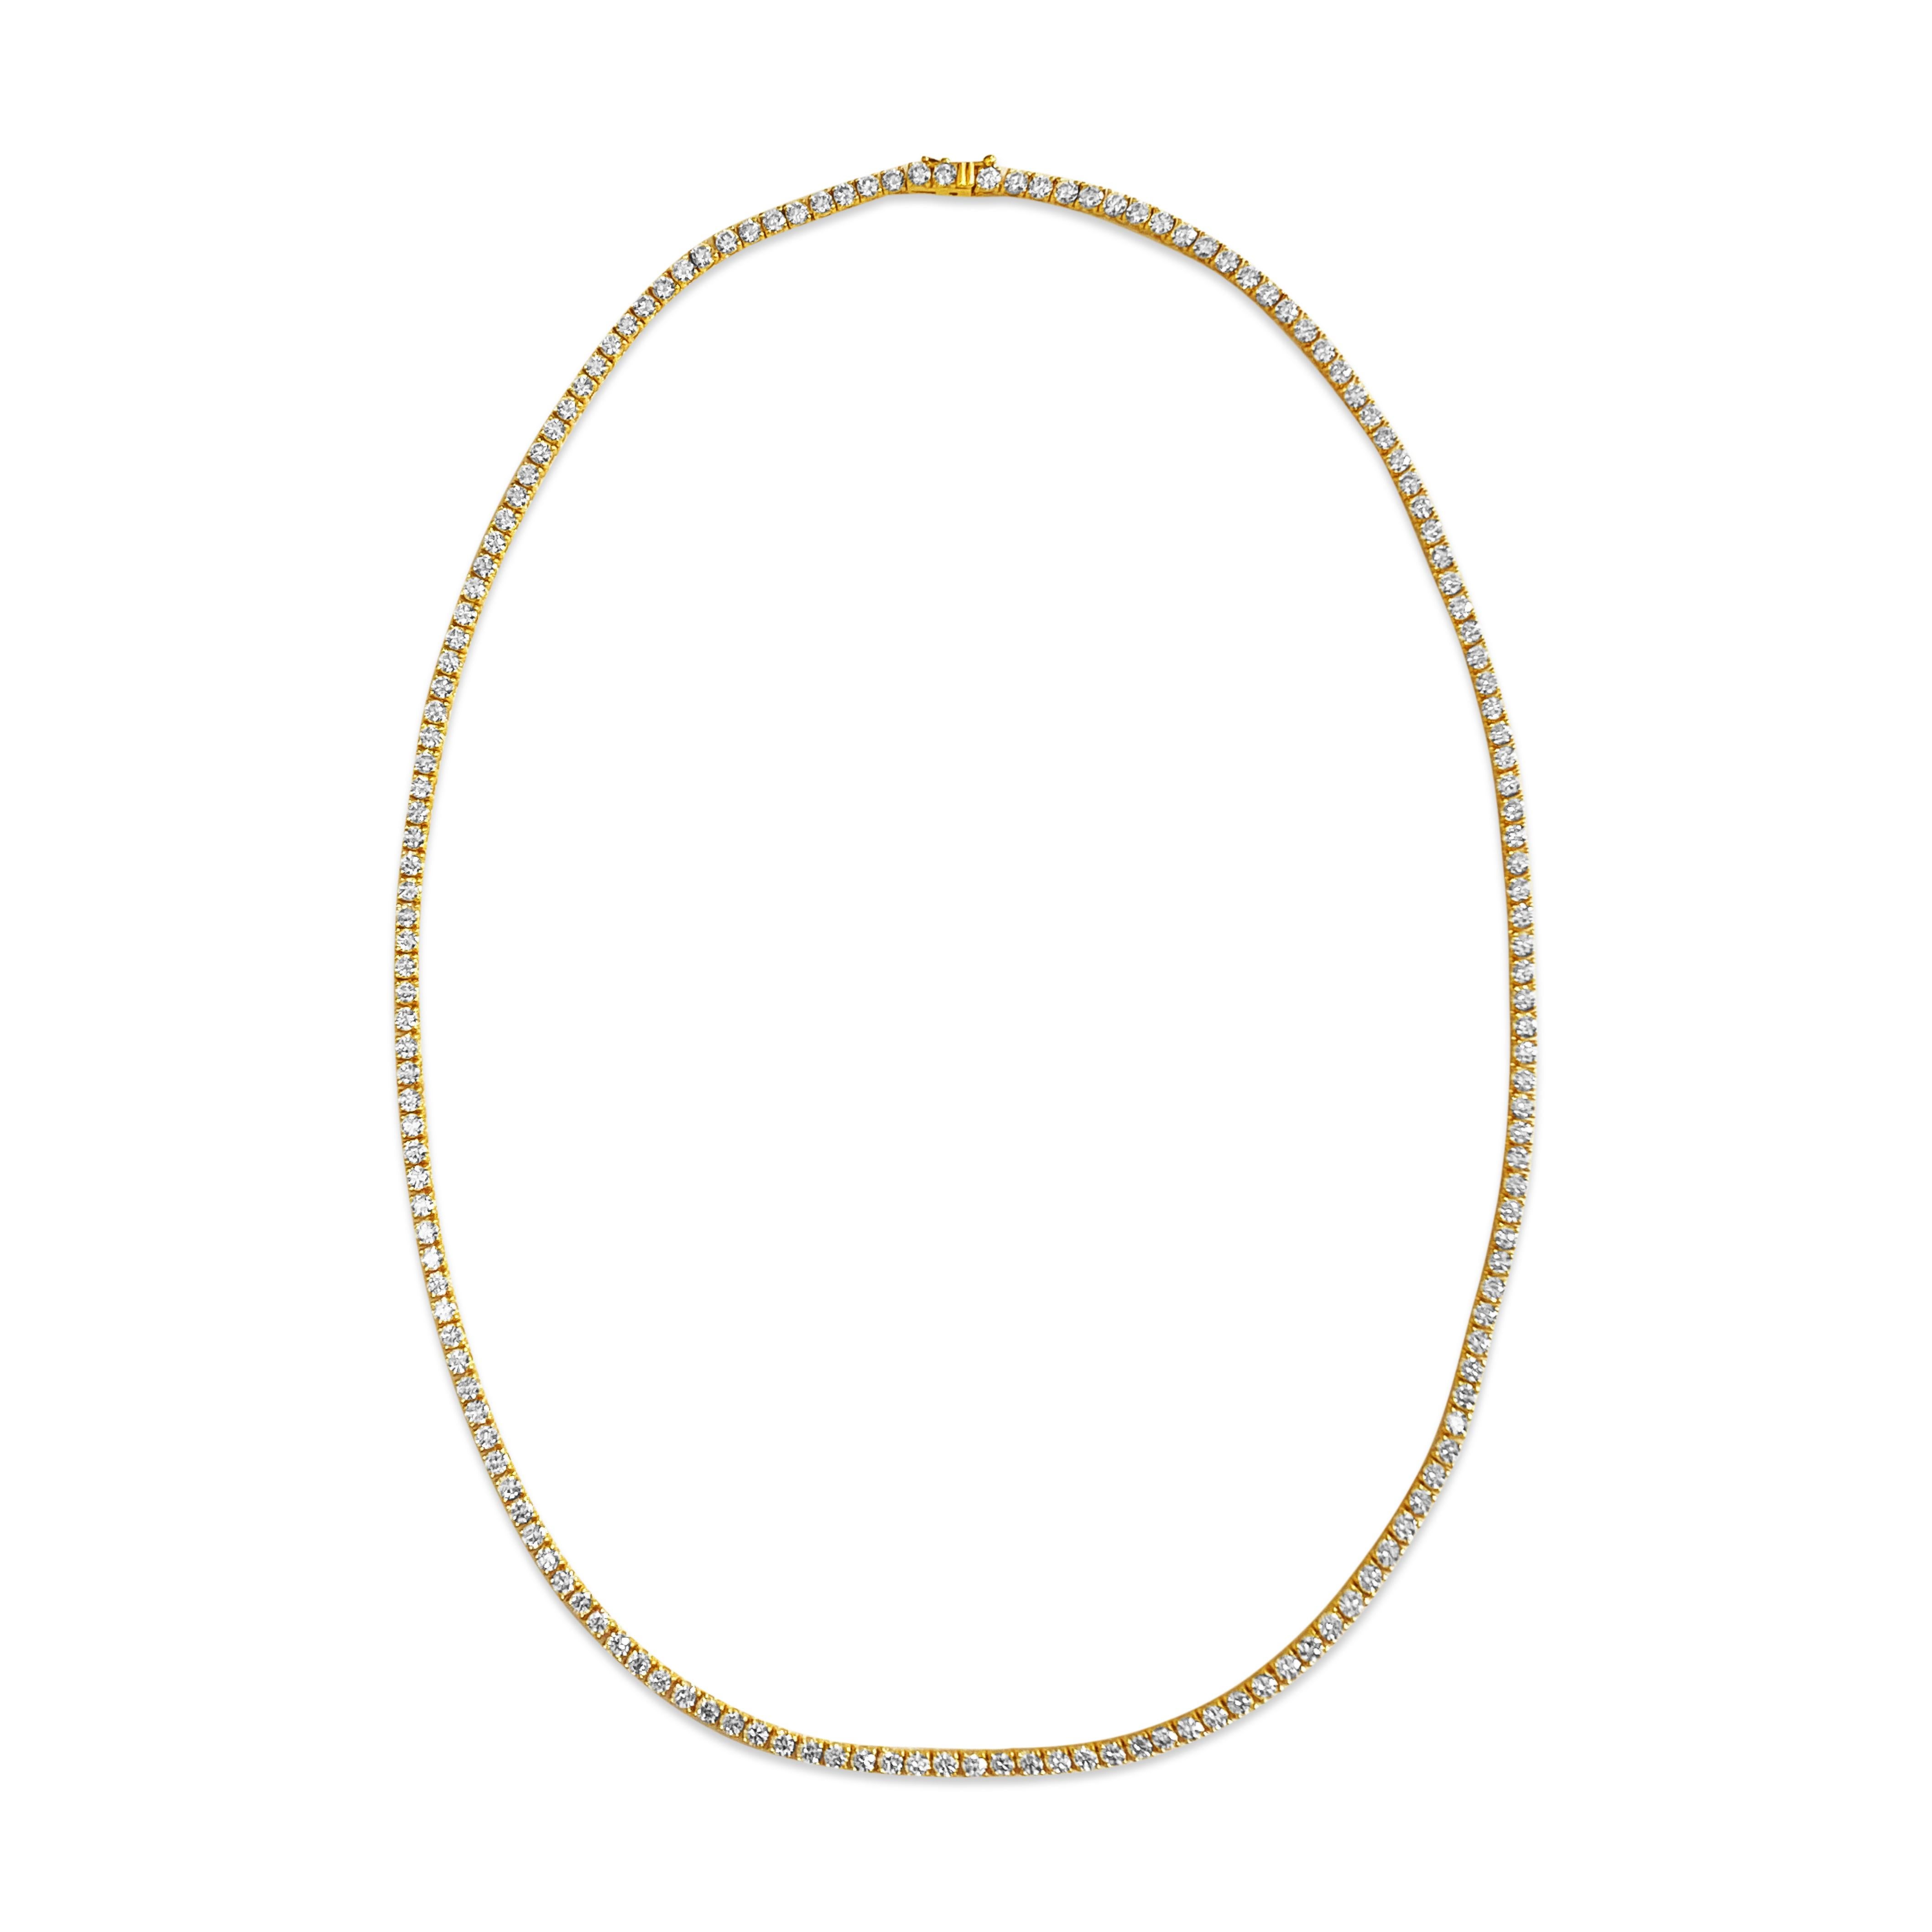 Diese exquisite Diamant-Tennis-Halskette ist aus luxuriösem 14-karätigem Gelbgold gefertigt und besticht durch runde Diamanten im Brillantschliff mit insgesamt 14,50 Karat. Jeder Diamant weist eine tadellose Klarheit (VVS) und eine dezente H-Farbe